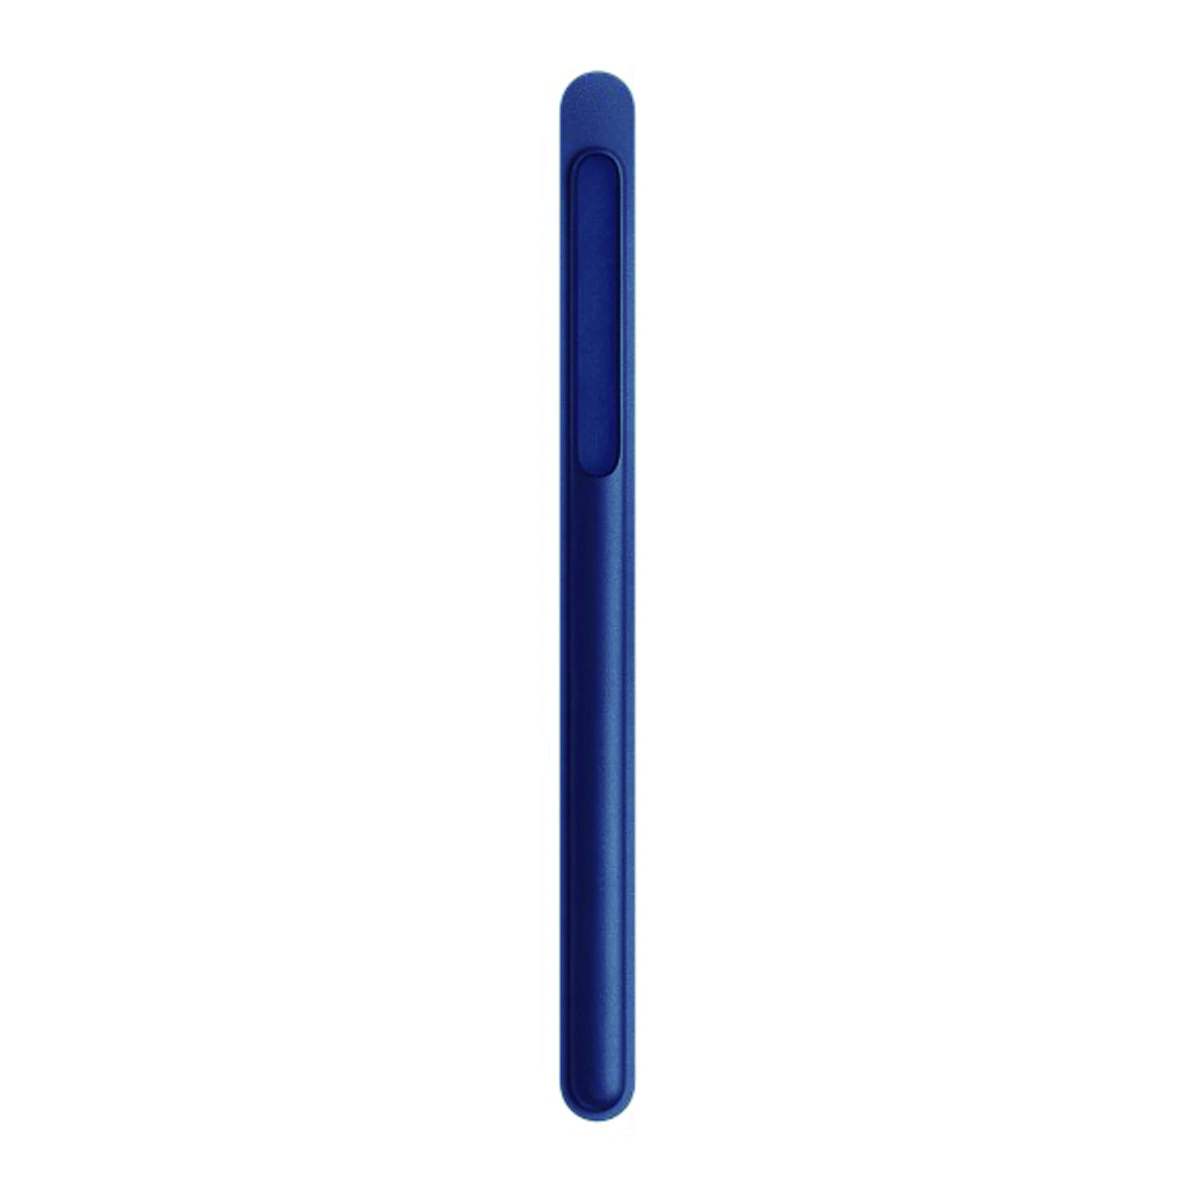 Funda de piel azul noche Apple para Apple Pencil